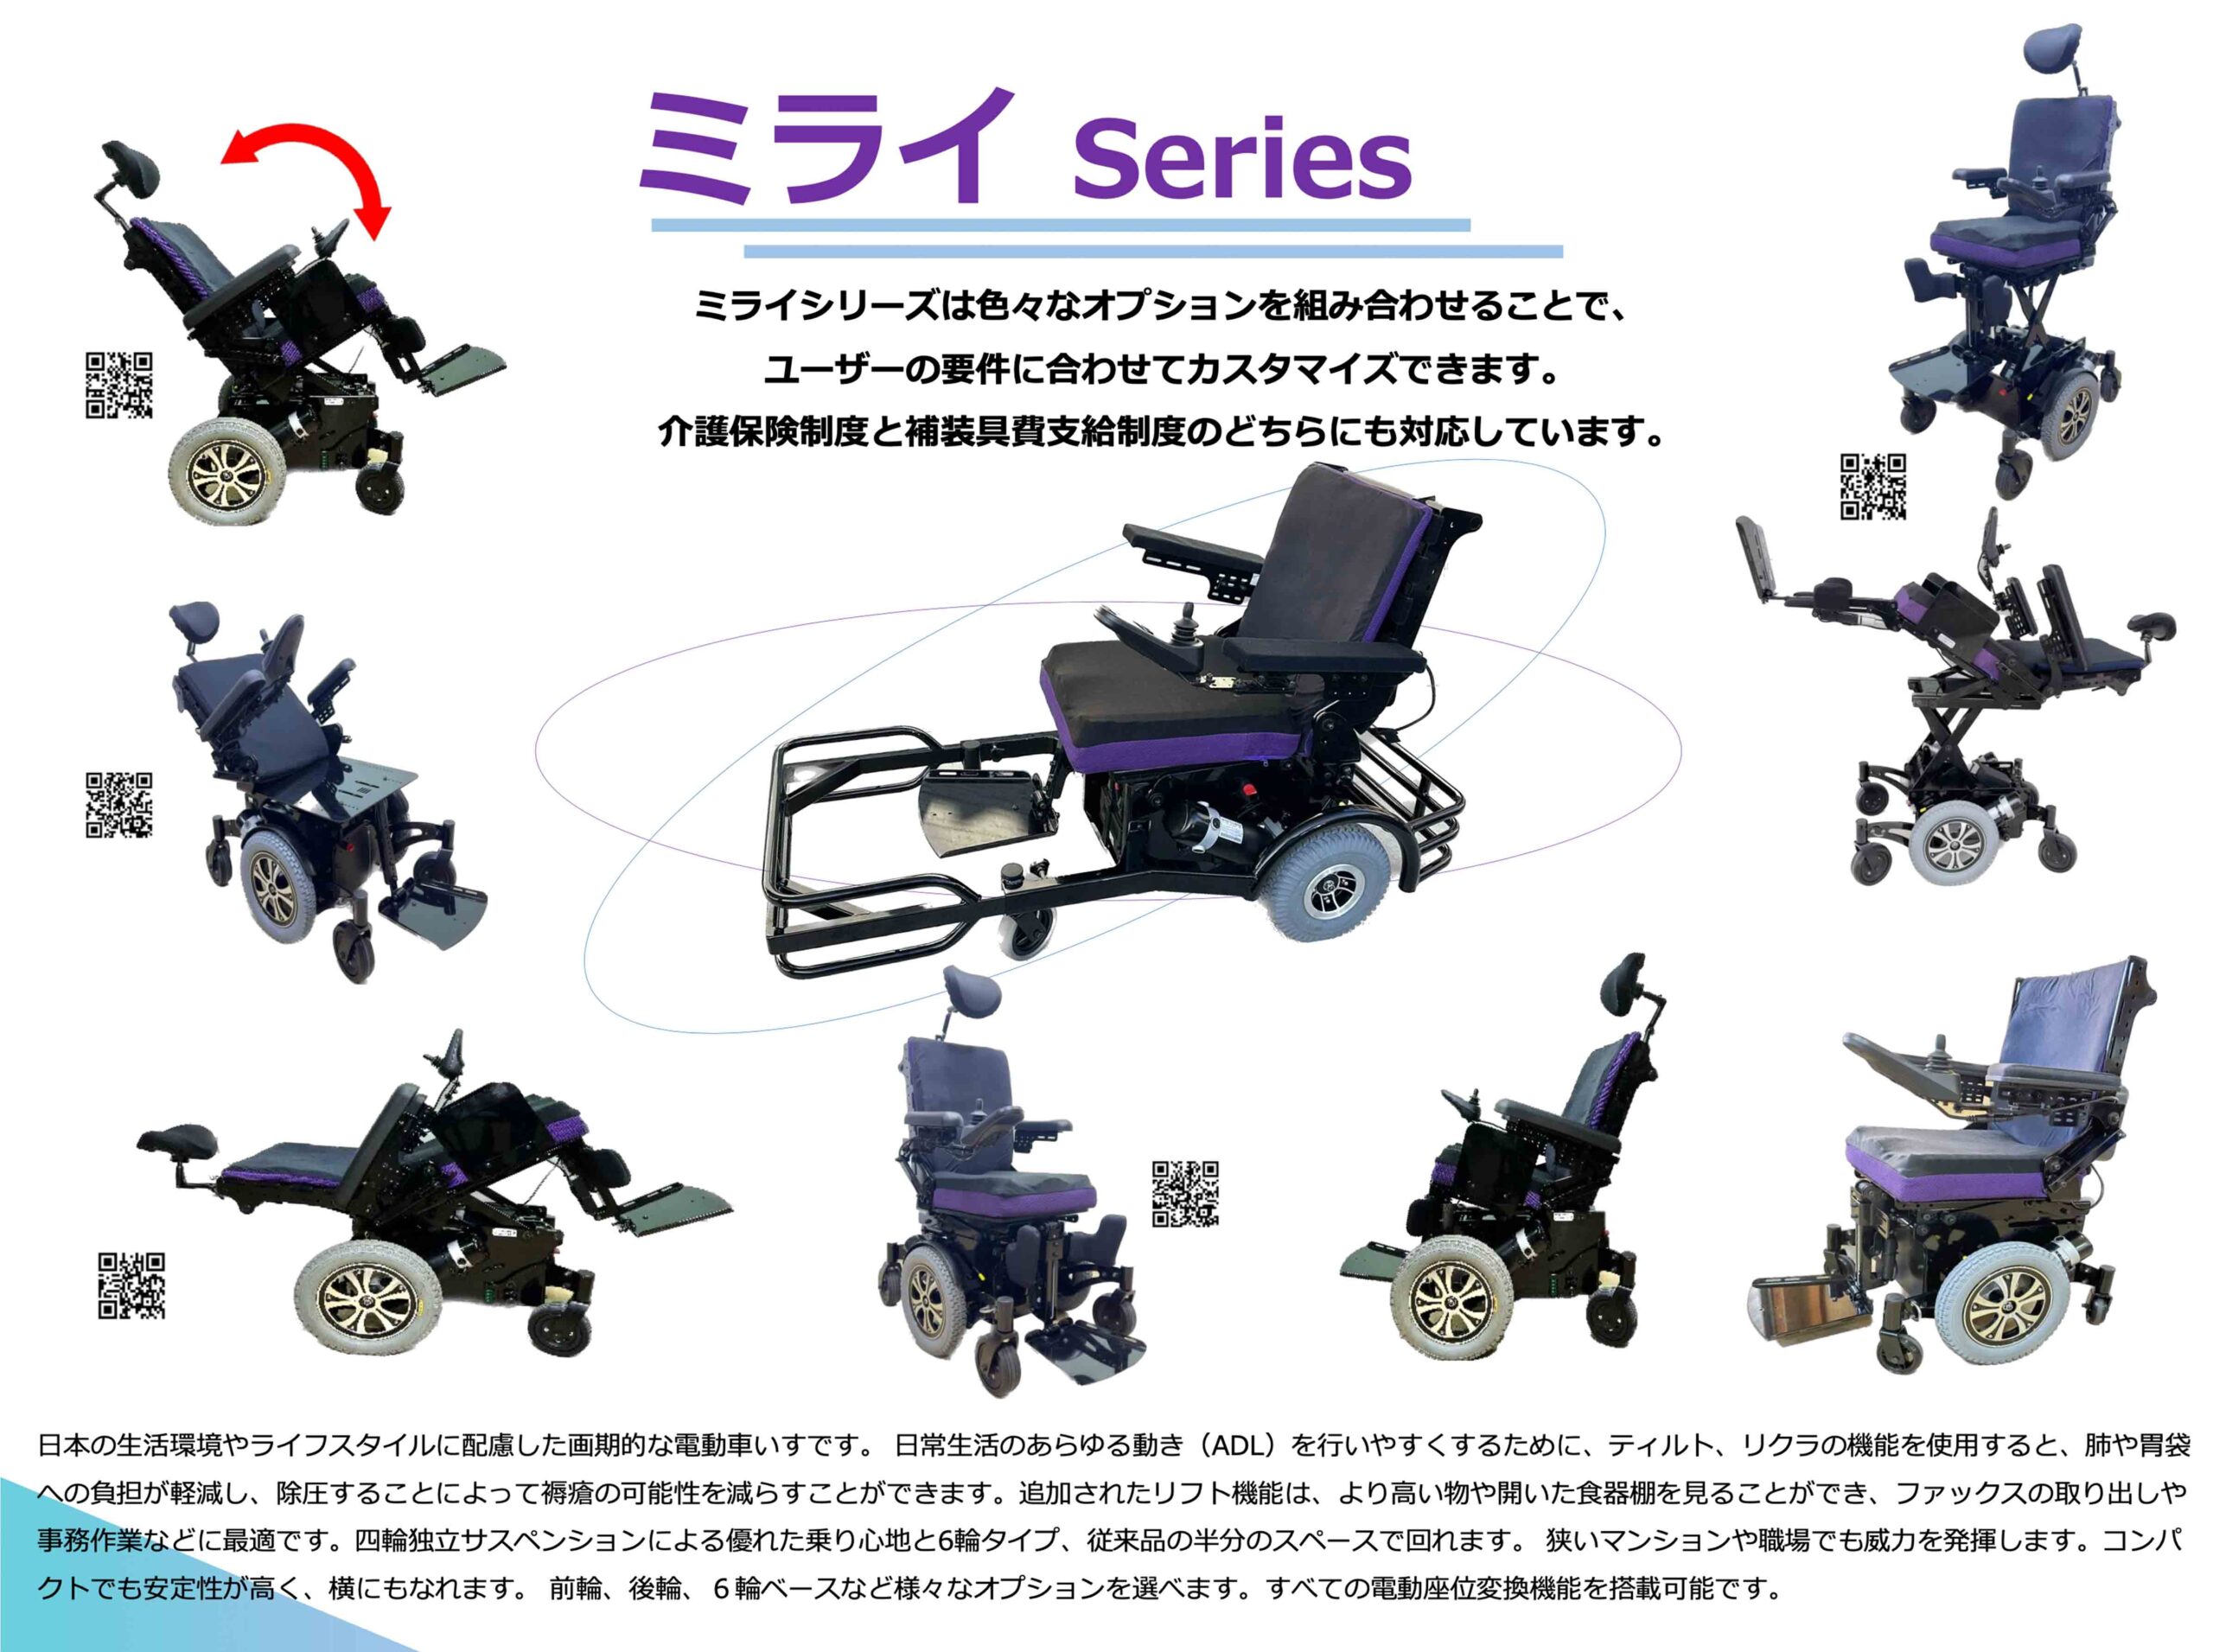 Sewa Mirai Series Wheelchair